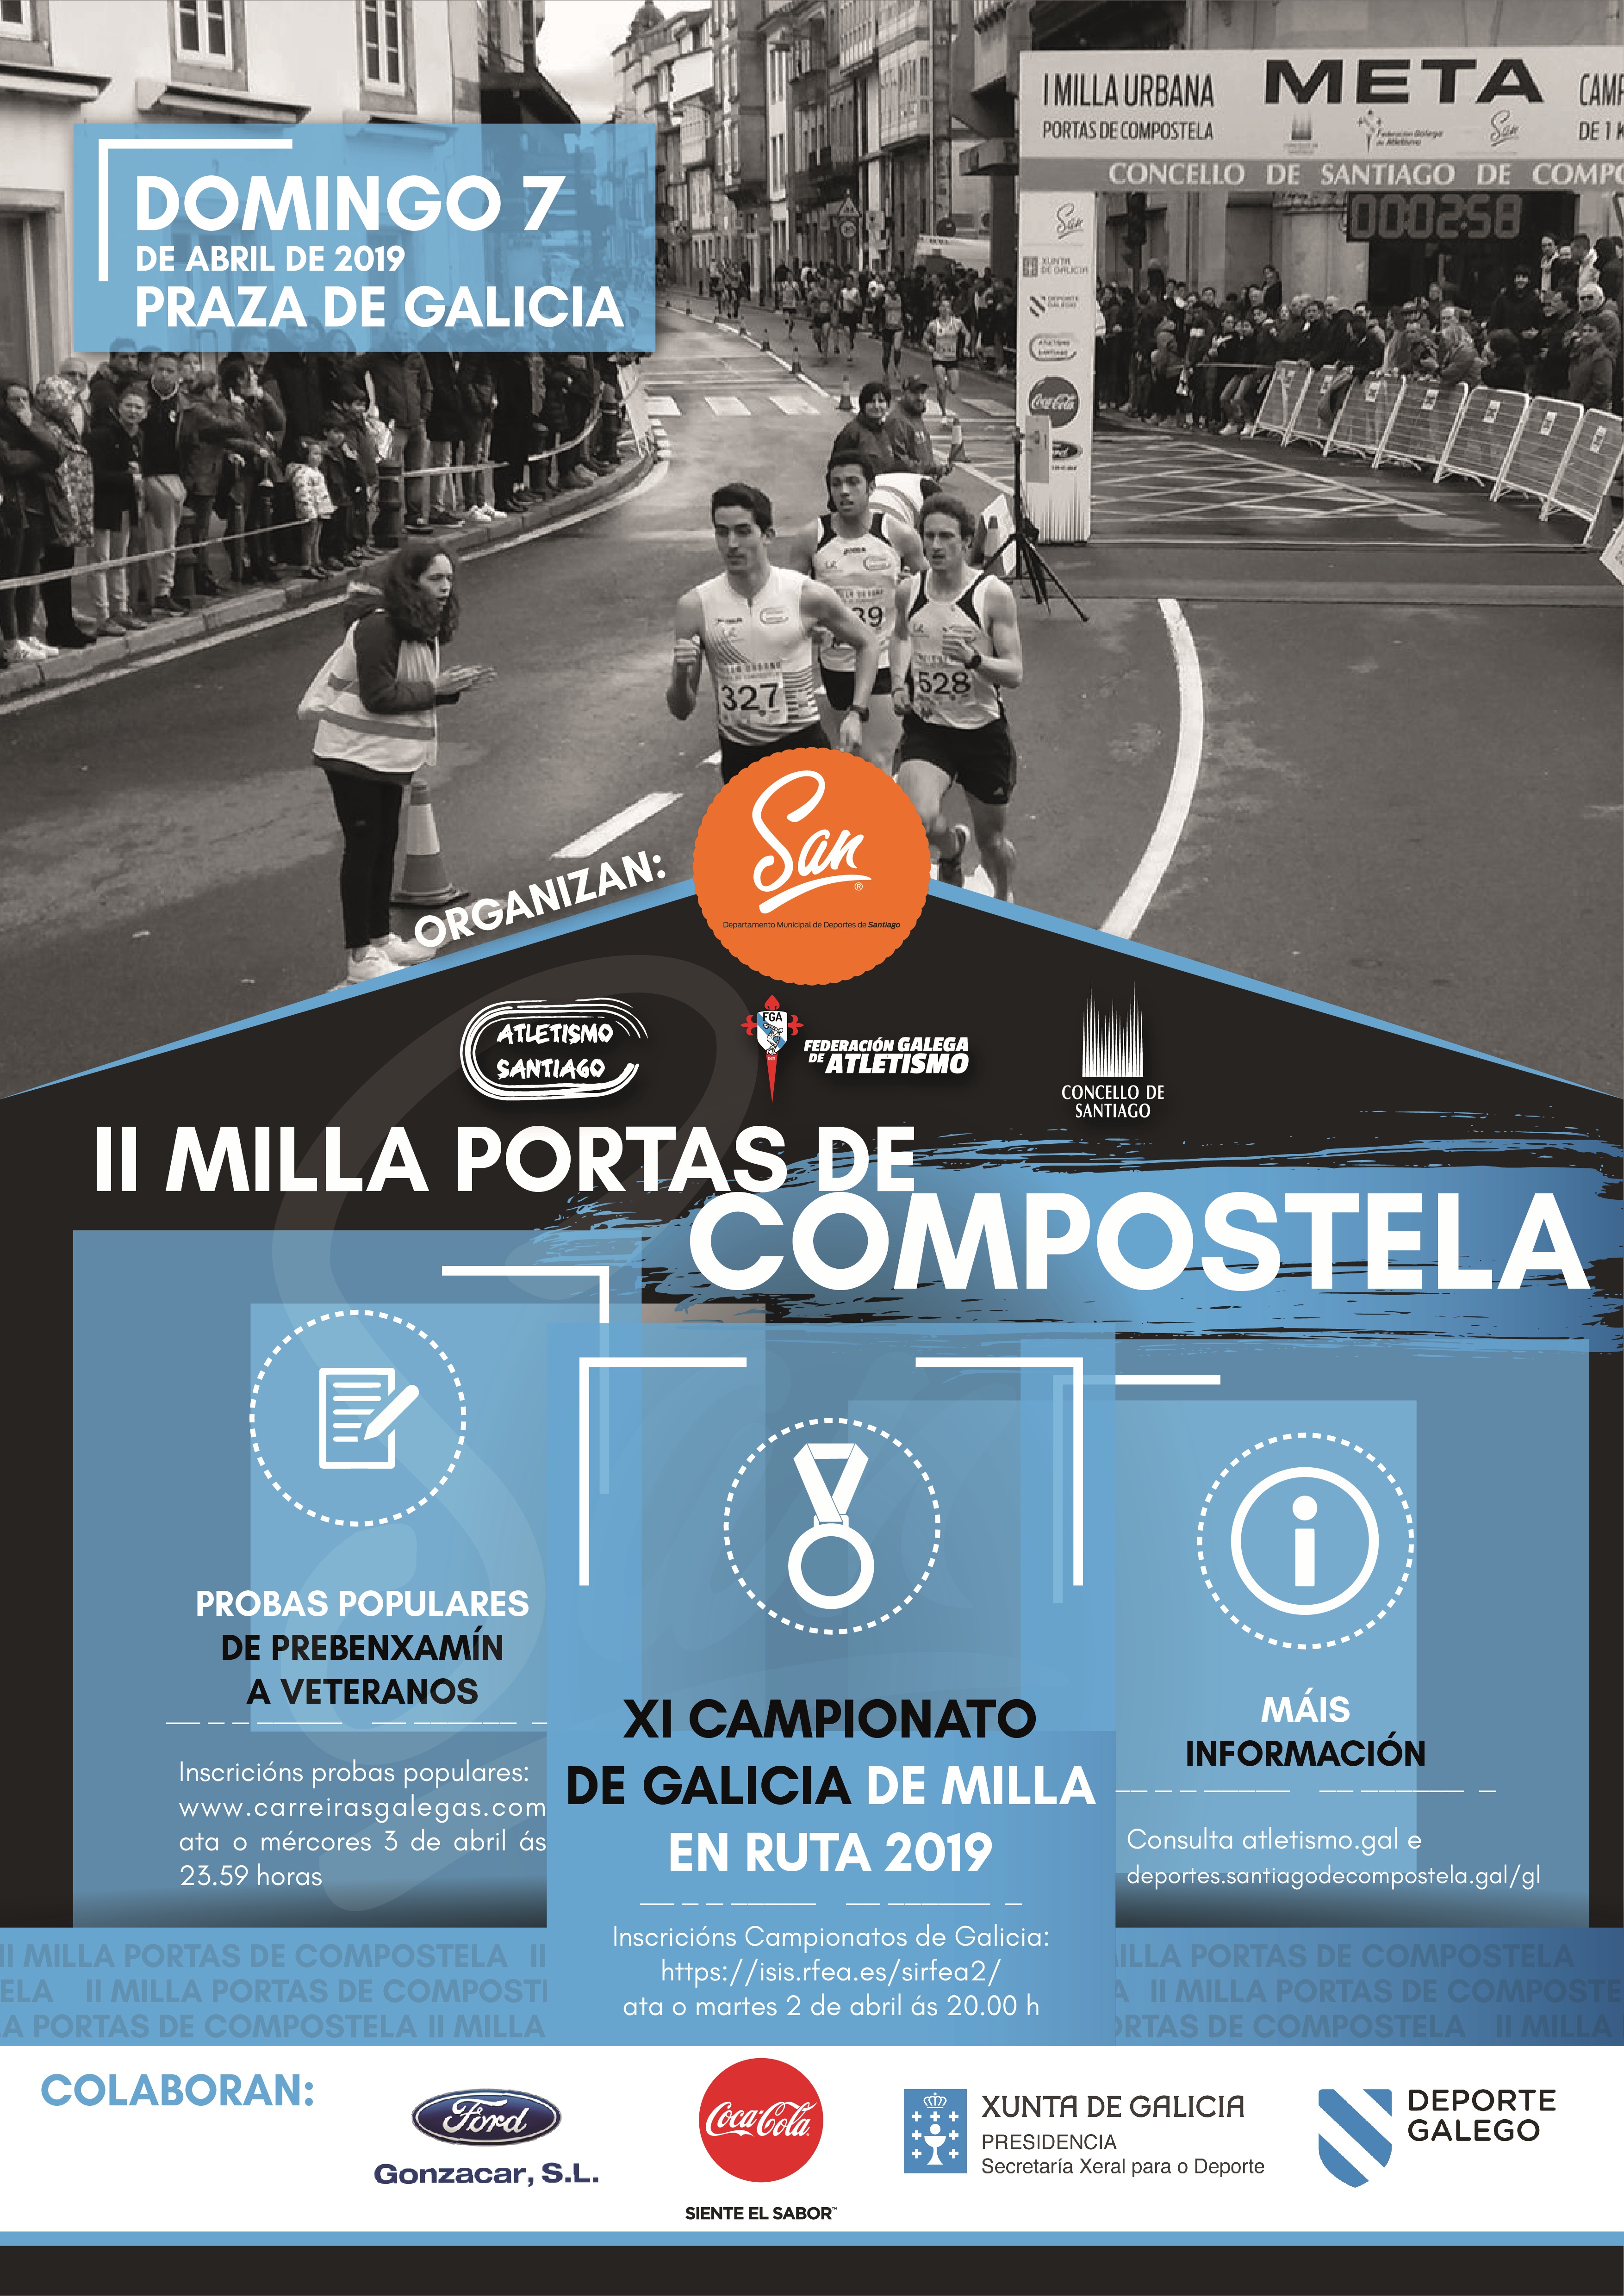 XI Campionato de Galicia de Milla en Ruta  2019